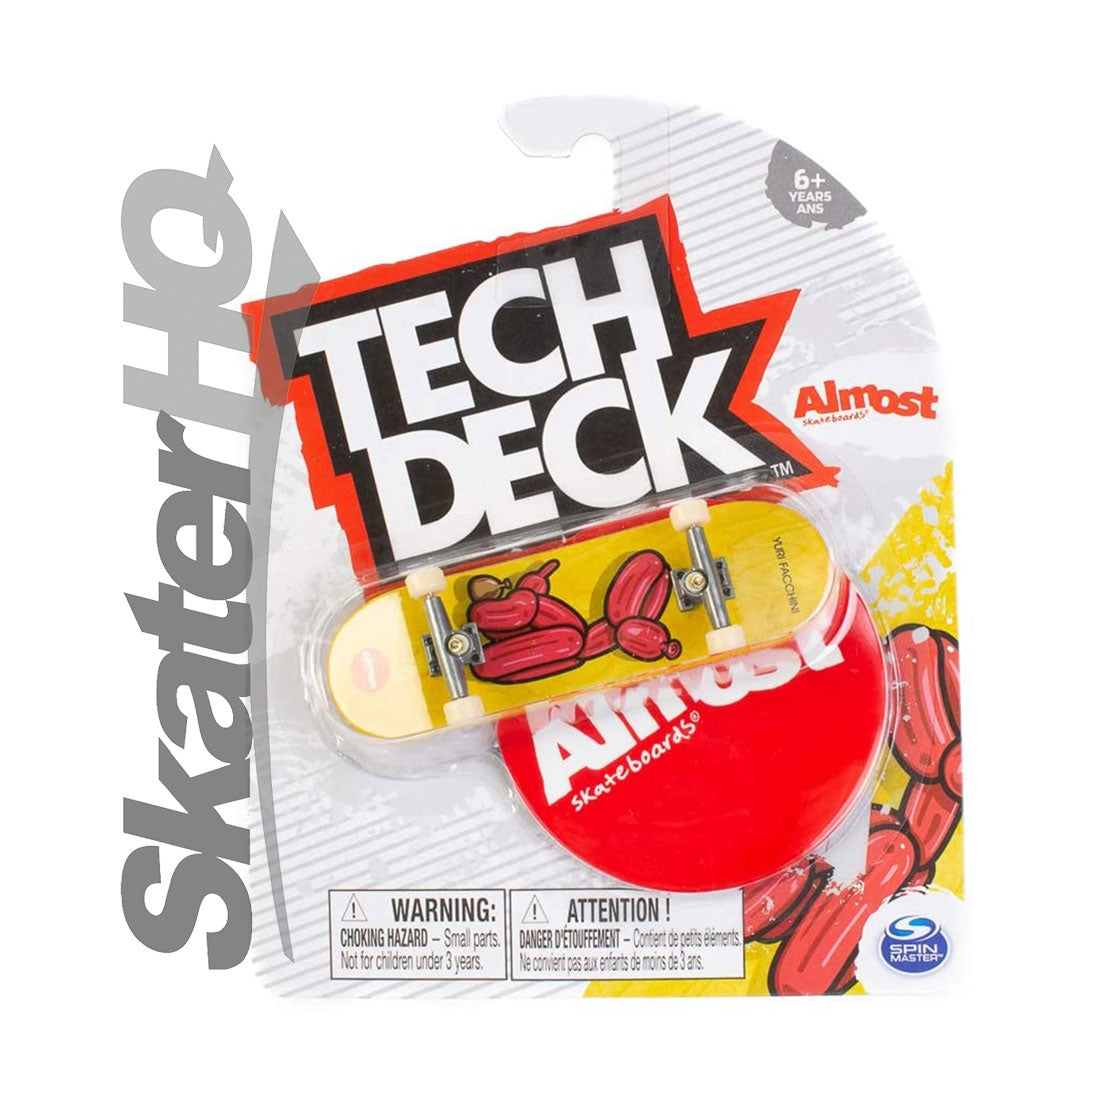 Tech Deck Series 11 - Almost - Facchini Balloon Skateboard Accessories